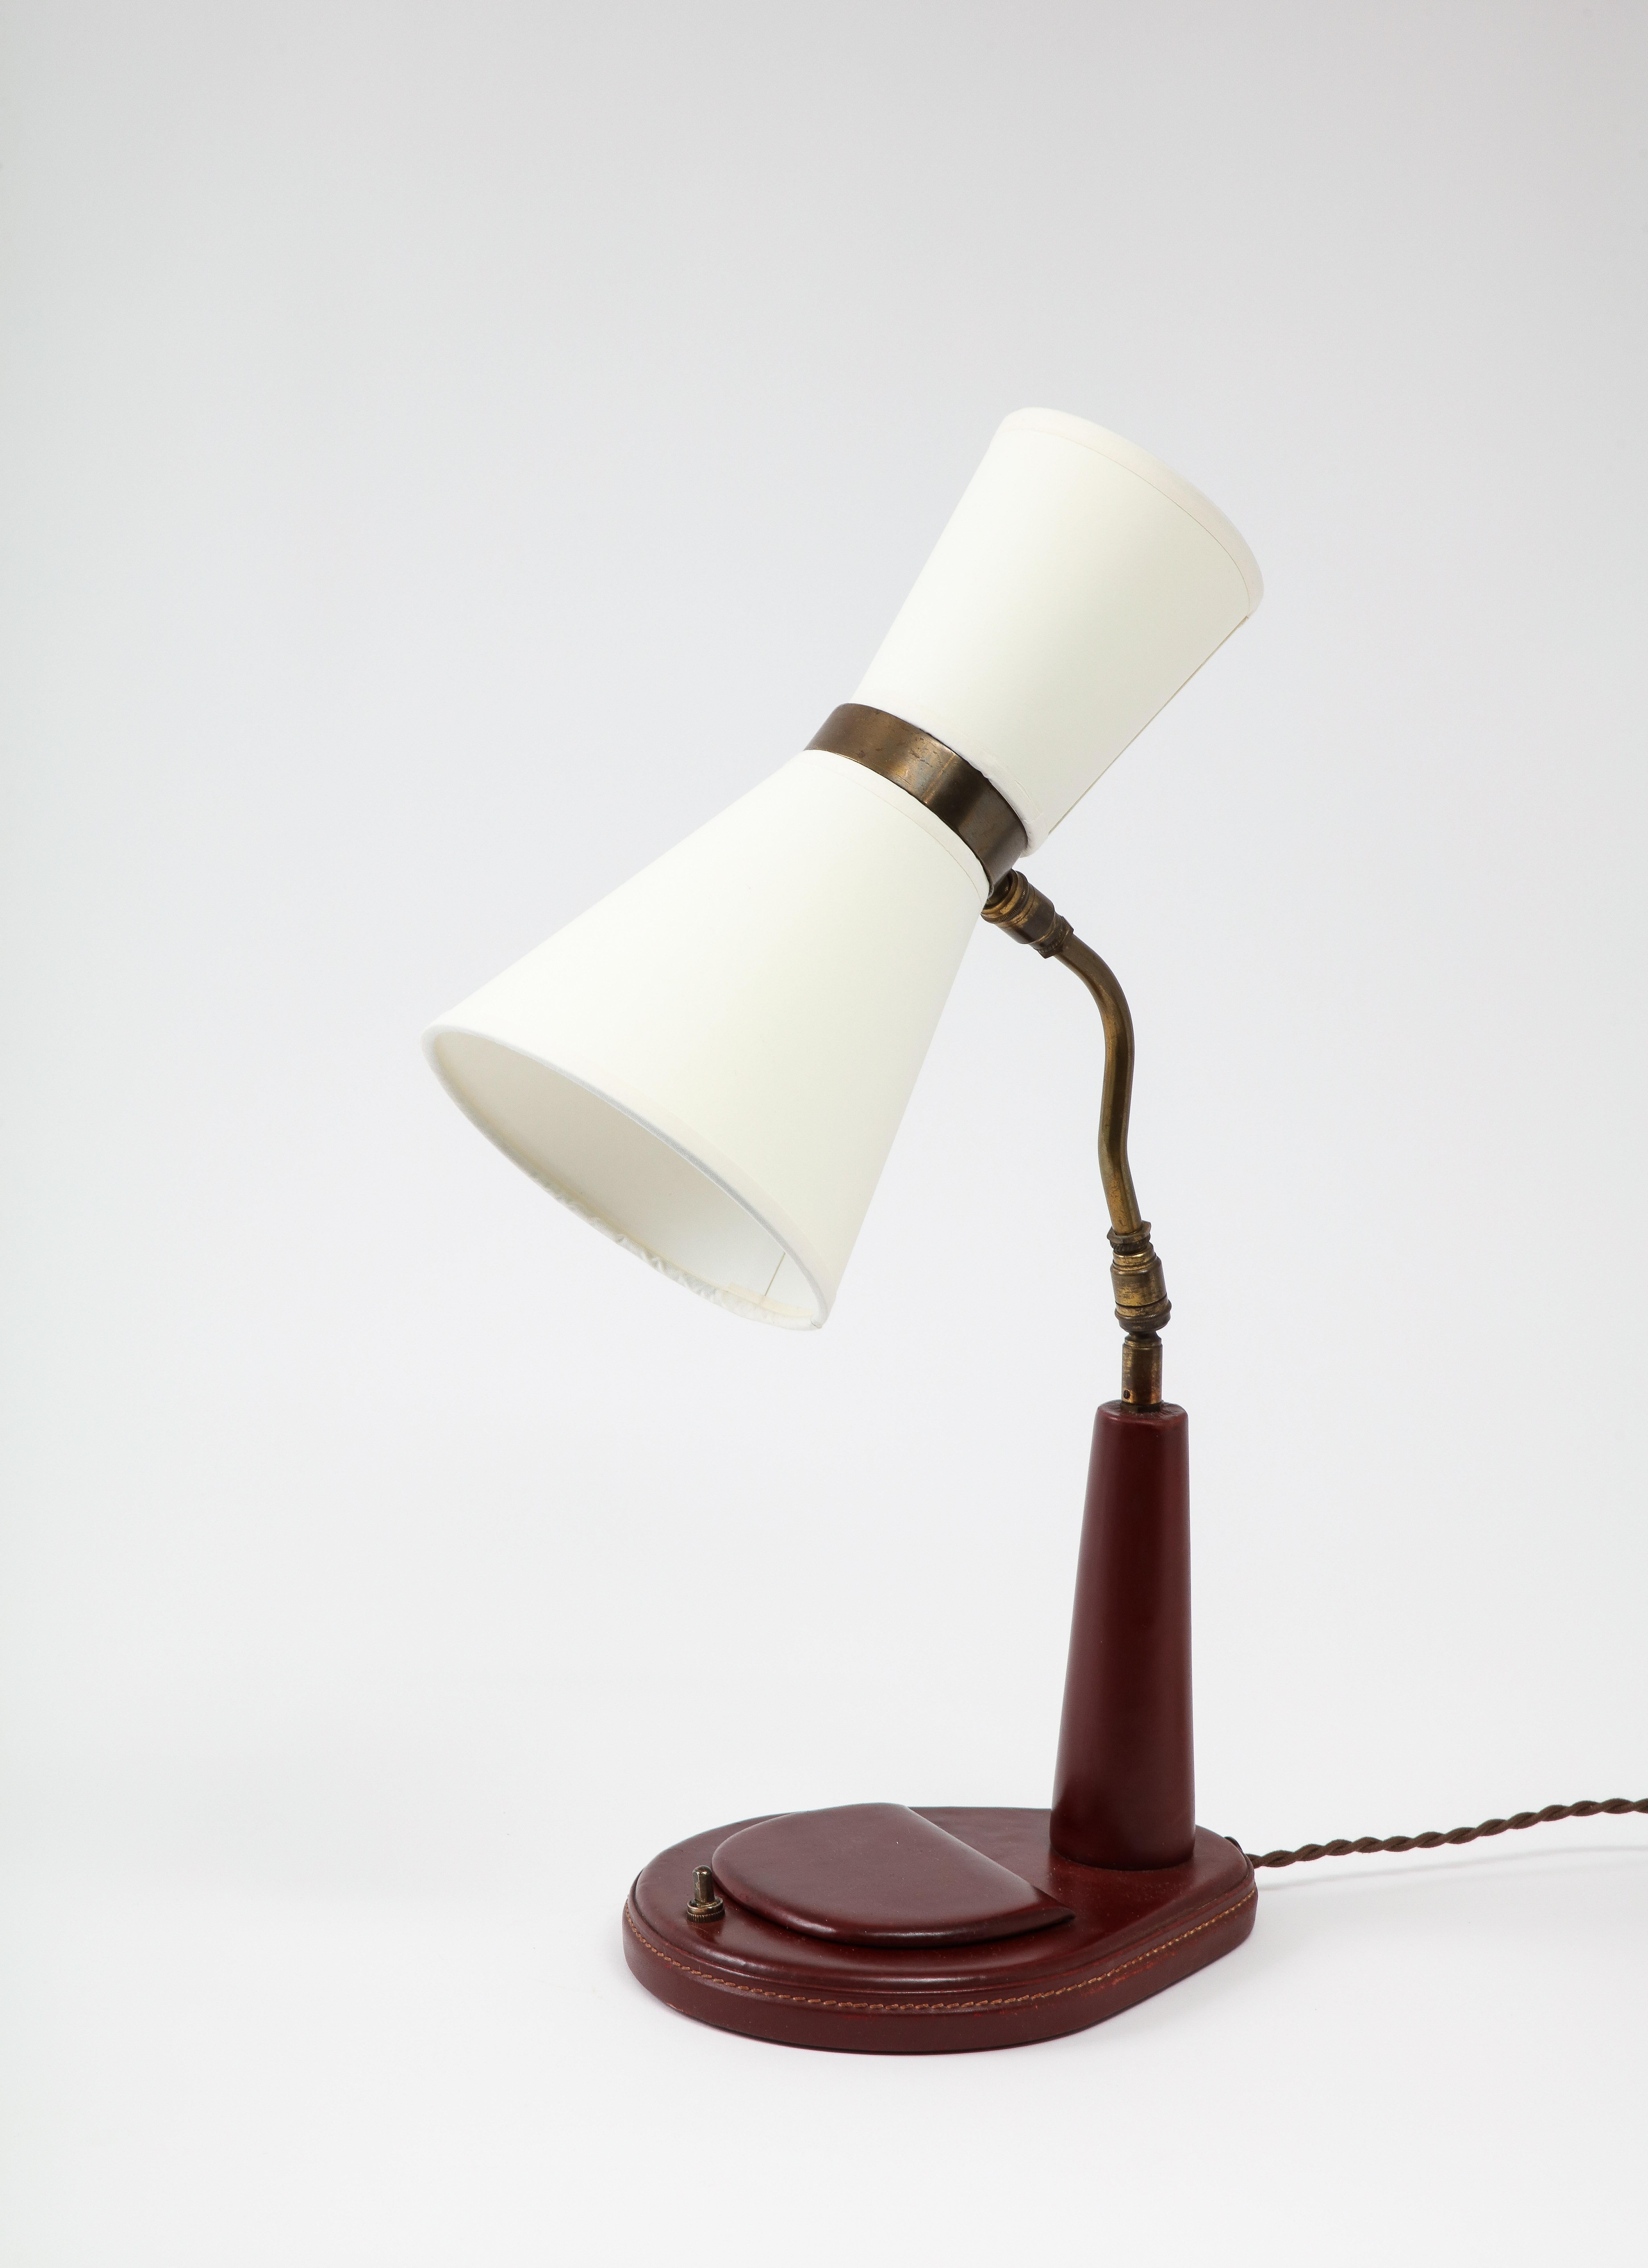 Elegante Lancel-Schreibtischlampe aus bordeauxfarbenem Leder; sie hat ein kleines Fach mit Deckel im Sockel. Die Lampe ist mit einem Seidenkabel und einem Stecker im Stil der Zeit neu verkabelt und wird mit maßgefertigten Schirmen geliefert.